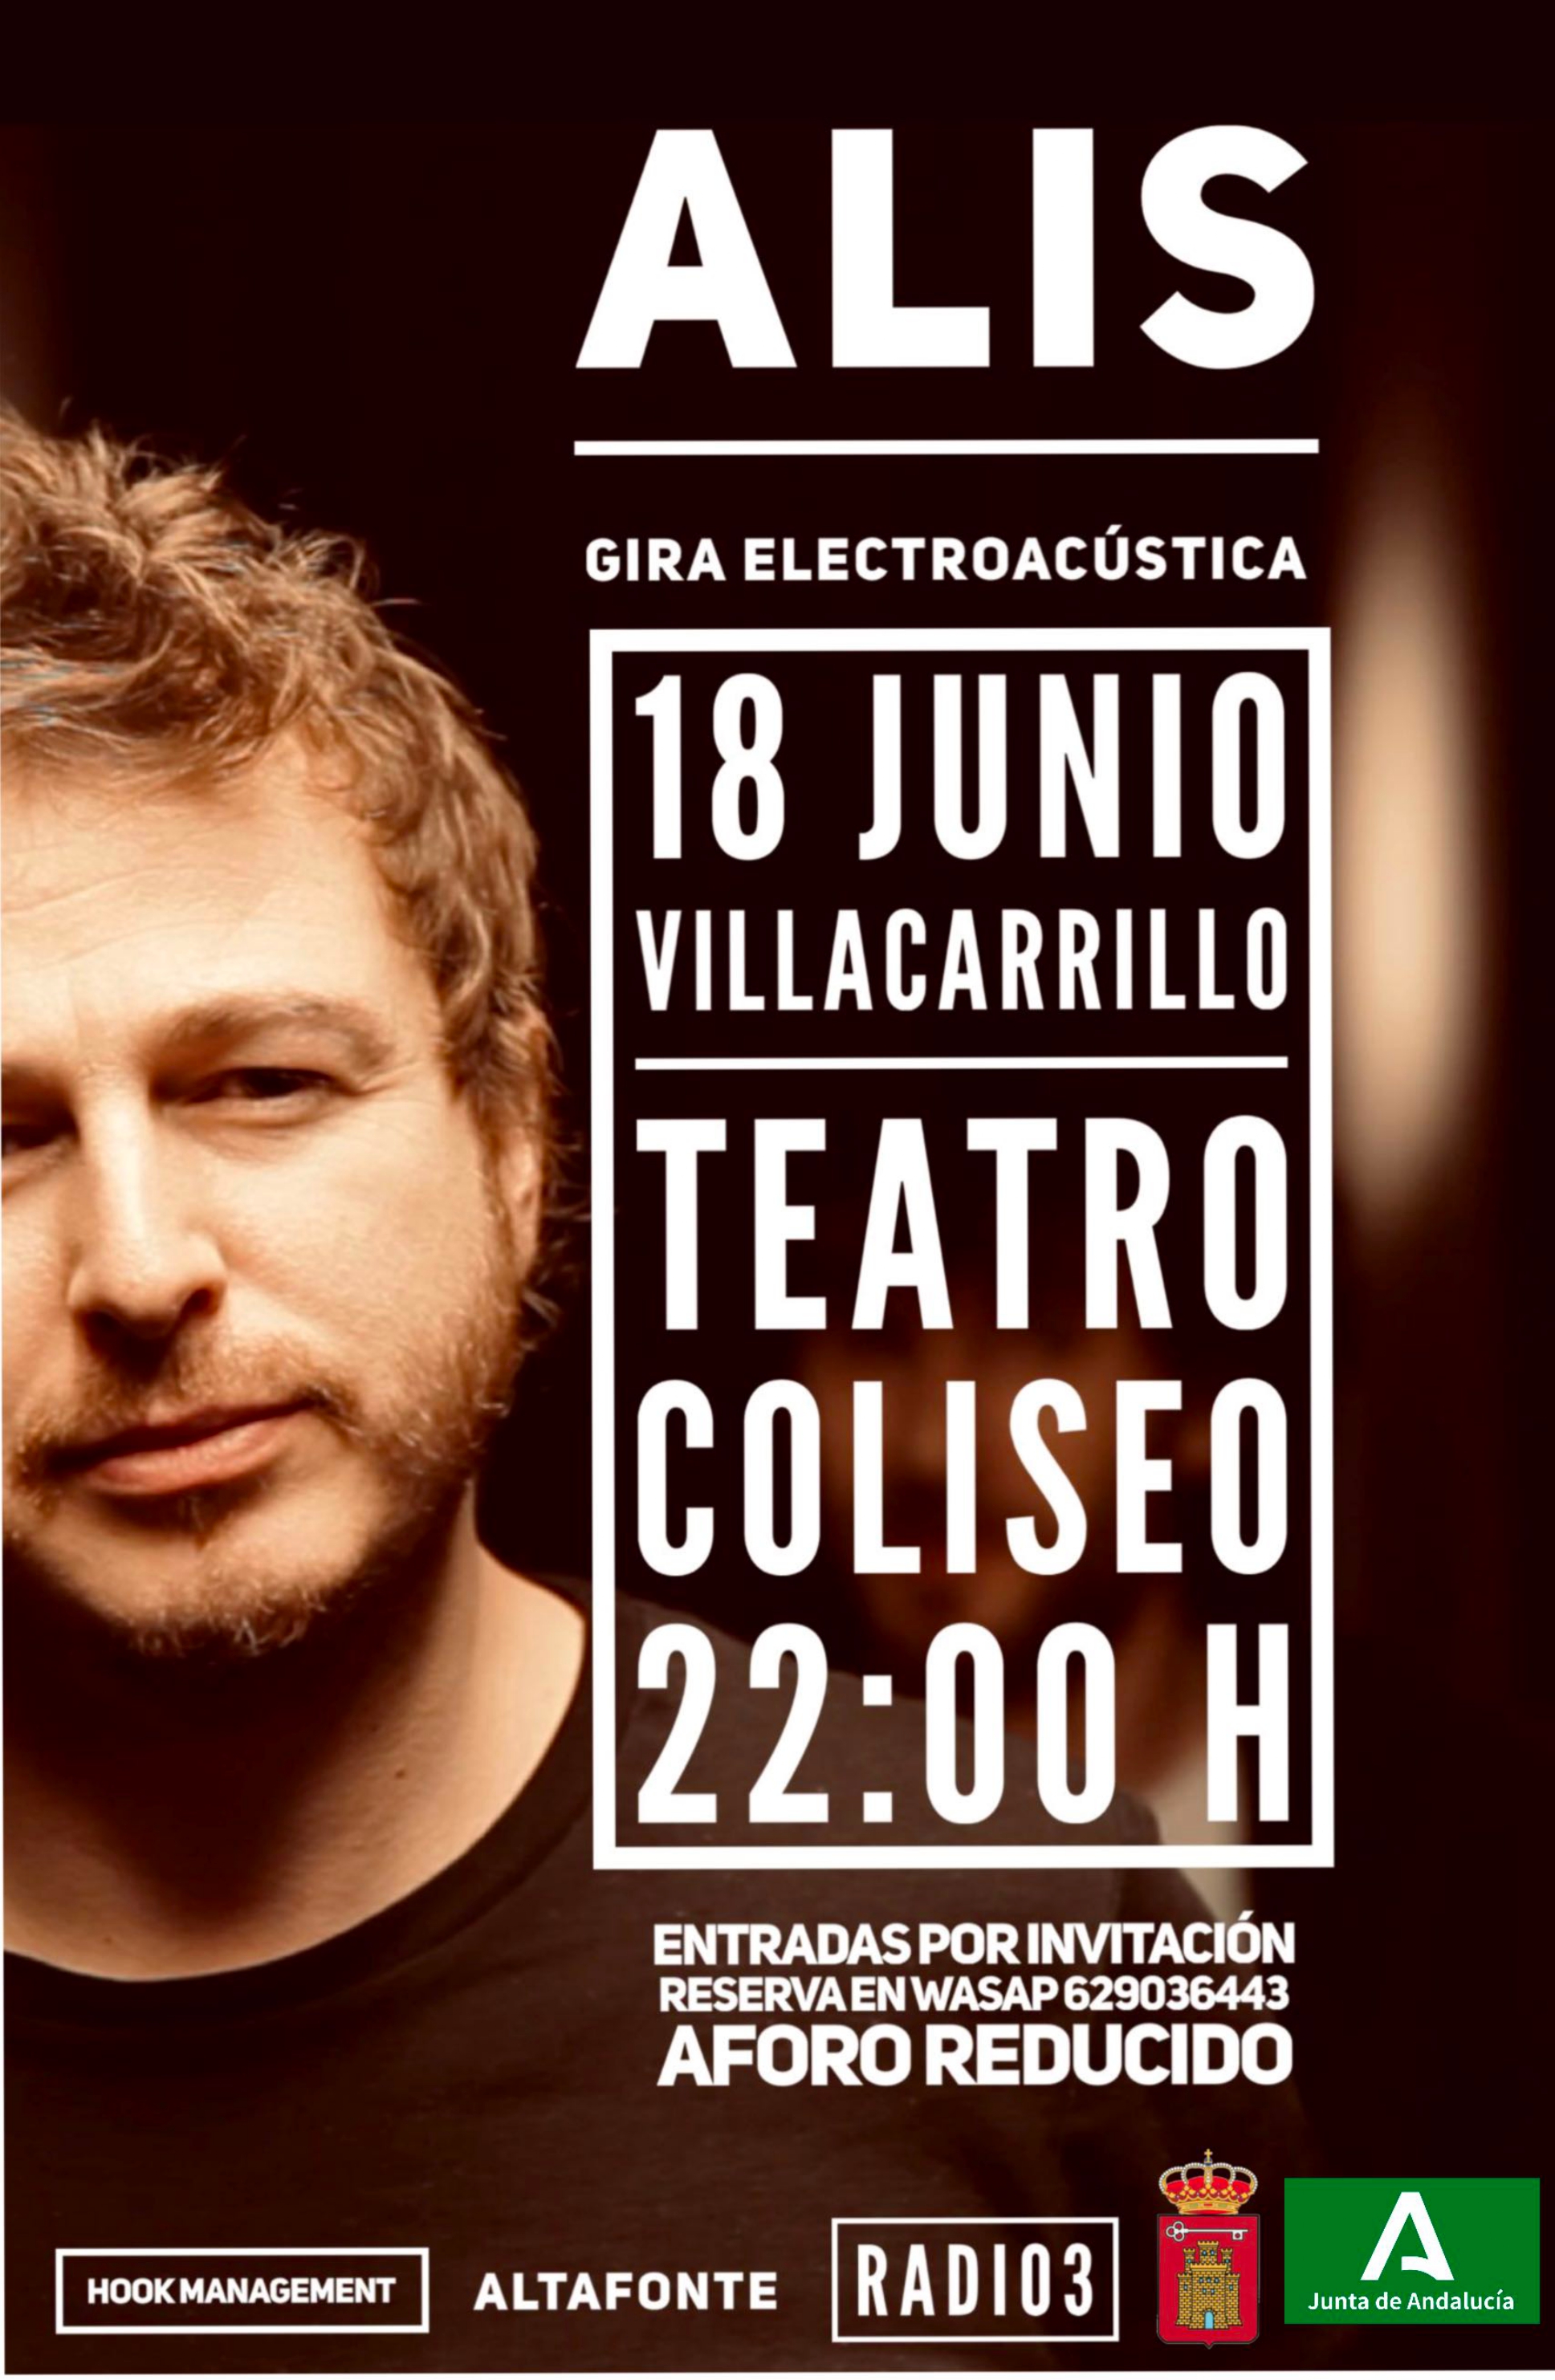 Villacarrillo Músic@s. Alis en el Coliseo de Villacarrillo dentro de su gira electroacústica